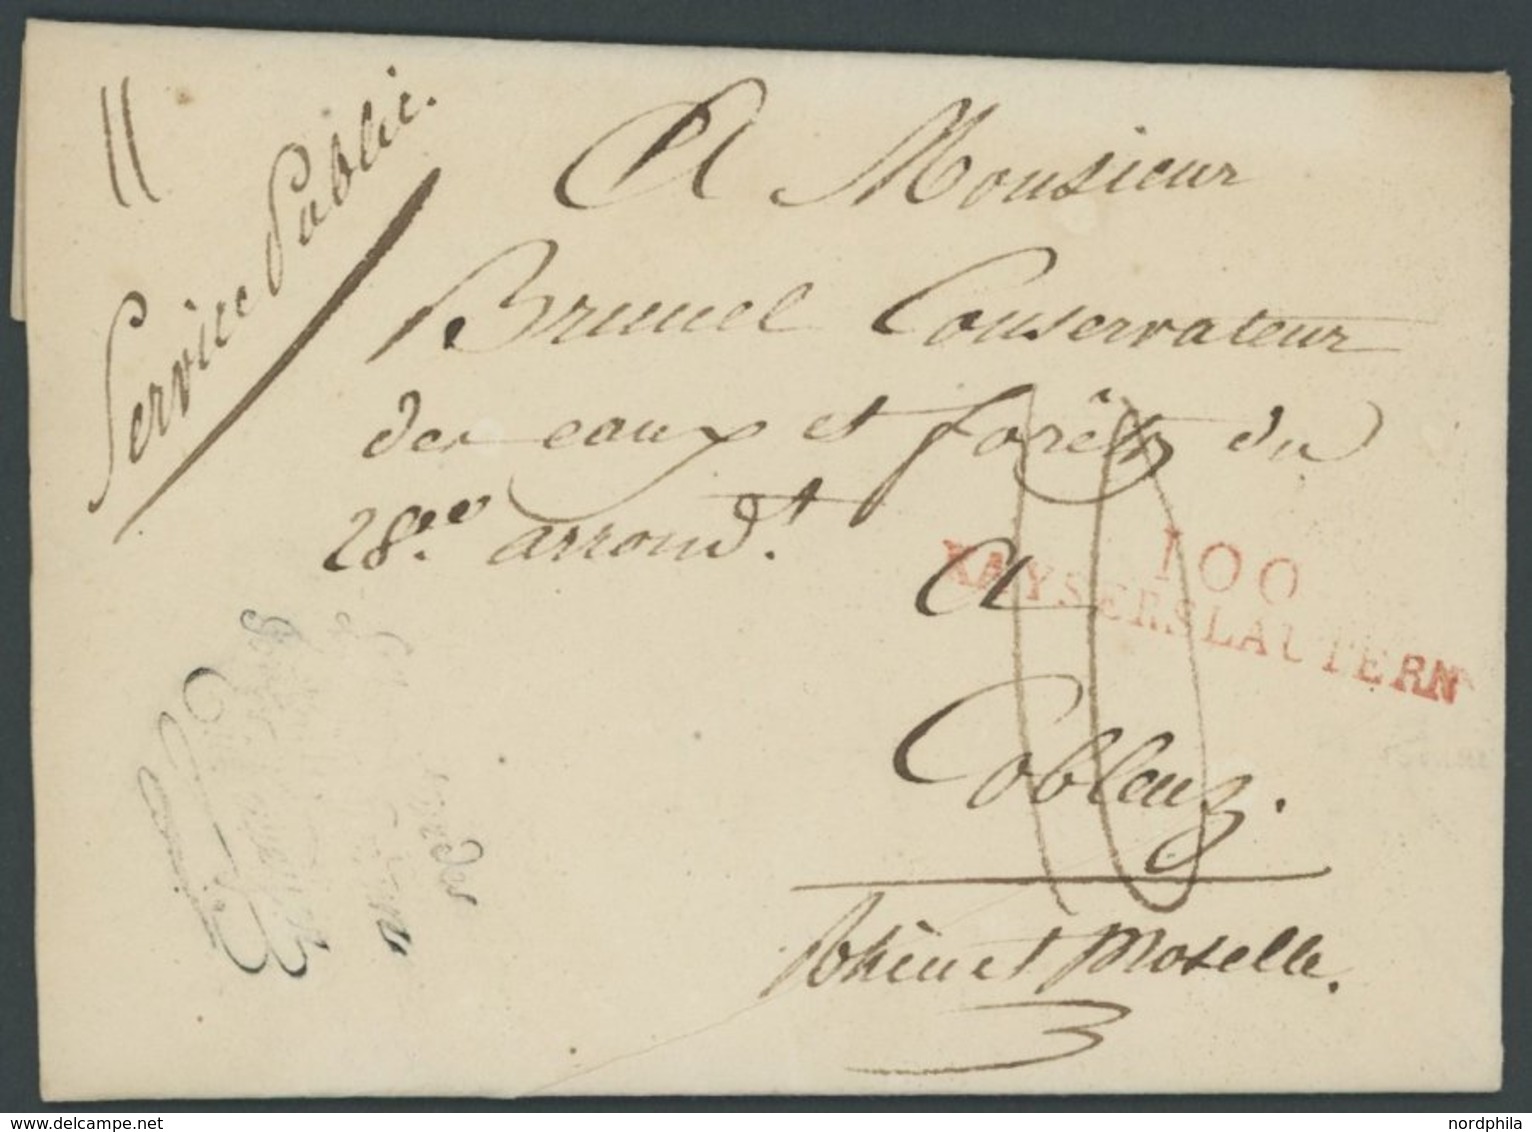 BAYERN 1810, 100 KAYERSLAUTERN, Roter L2, Auf Persönlichem Briefpapier Von Charles Eickemeyer, Taxiert, Prachtbrief - Vorphilatelie